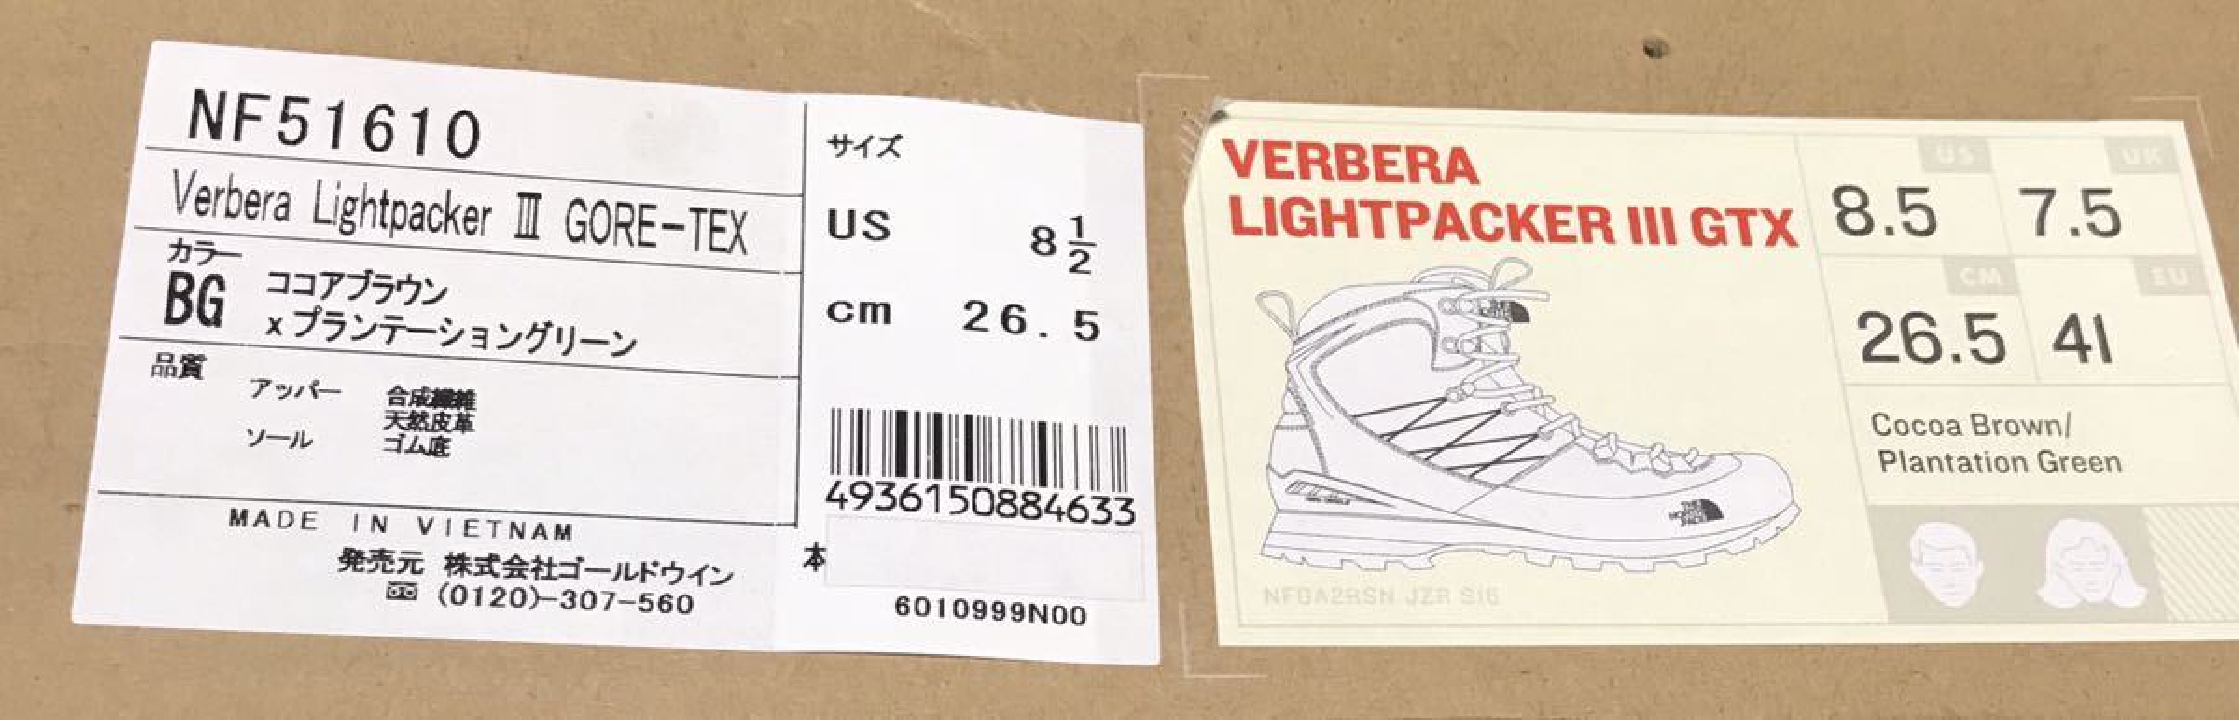 รองเท้าเดินป่า Ververa Light Packer III GORE-TEX สีน้ำตาล